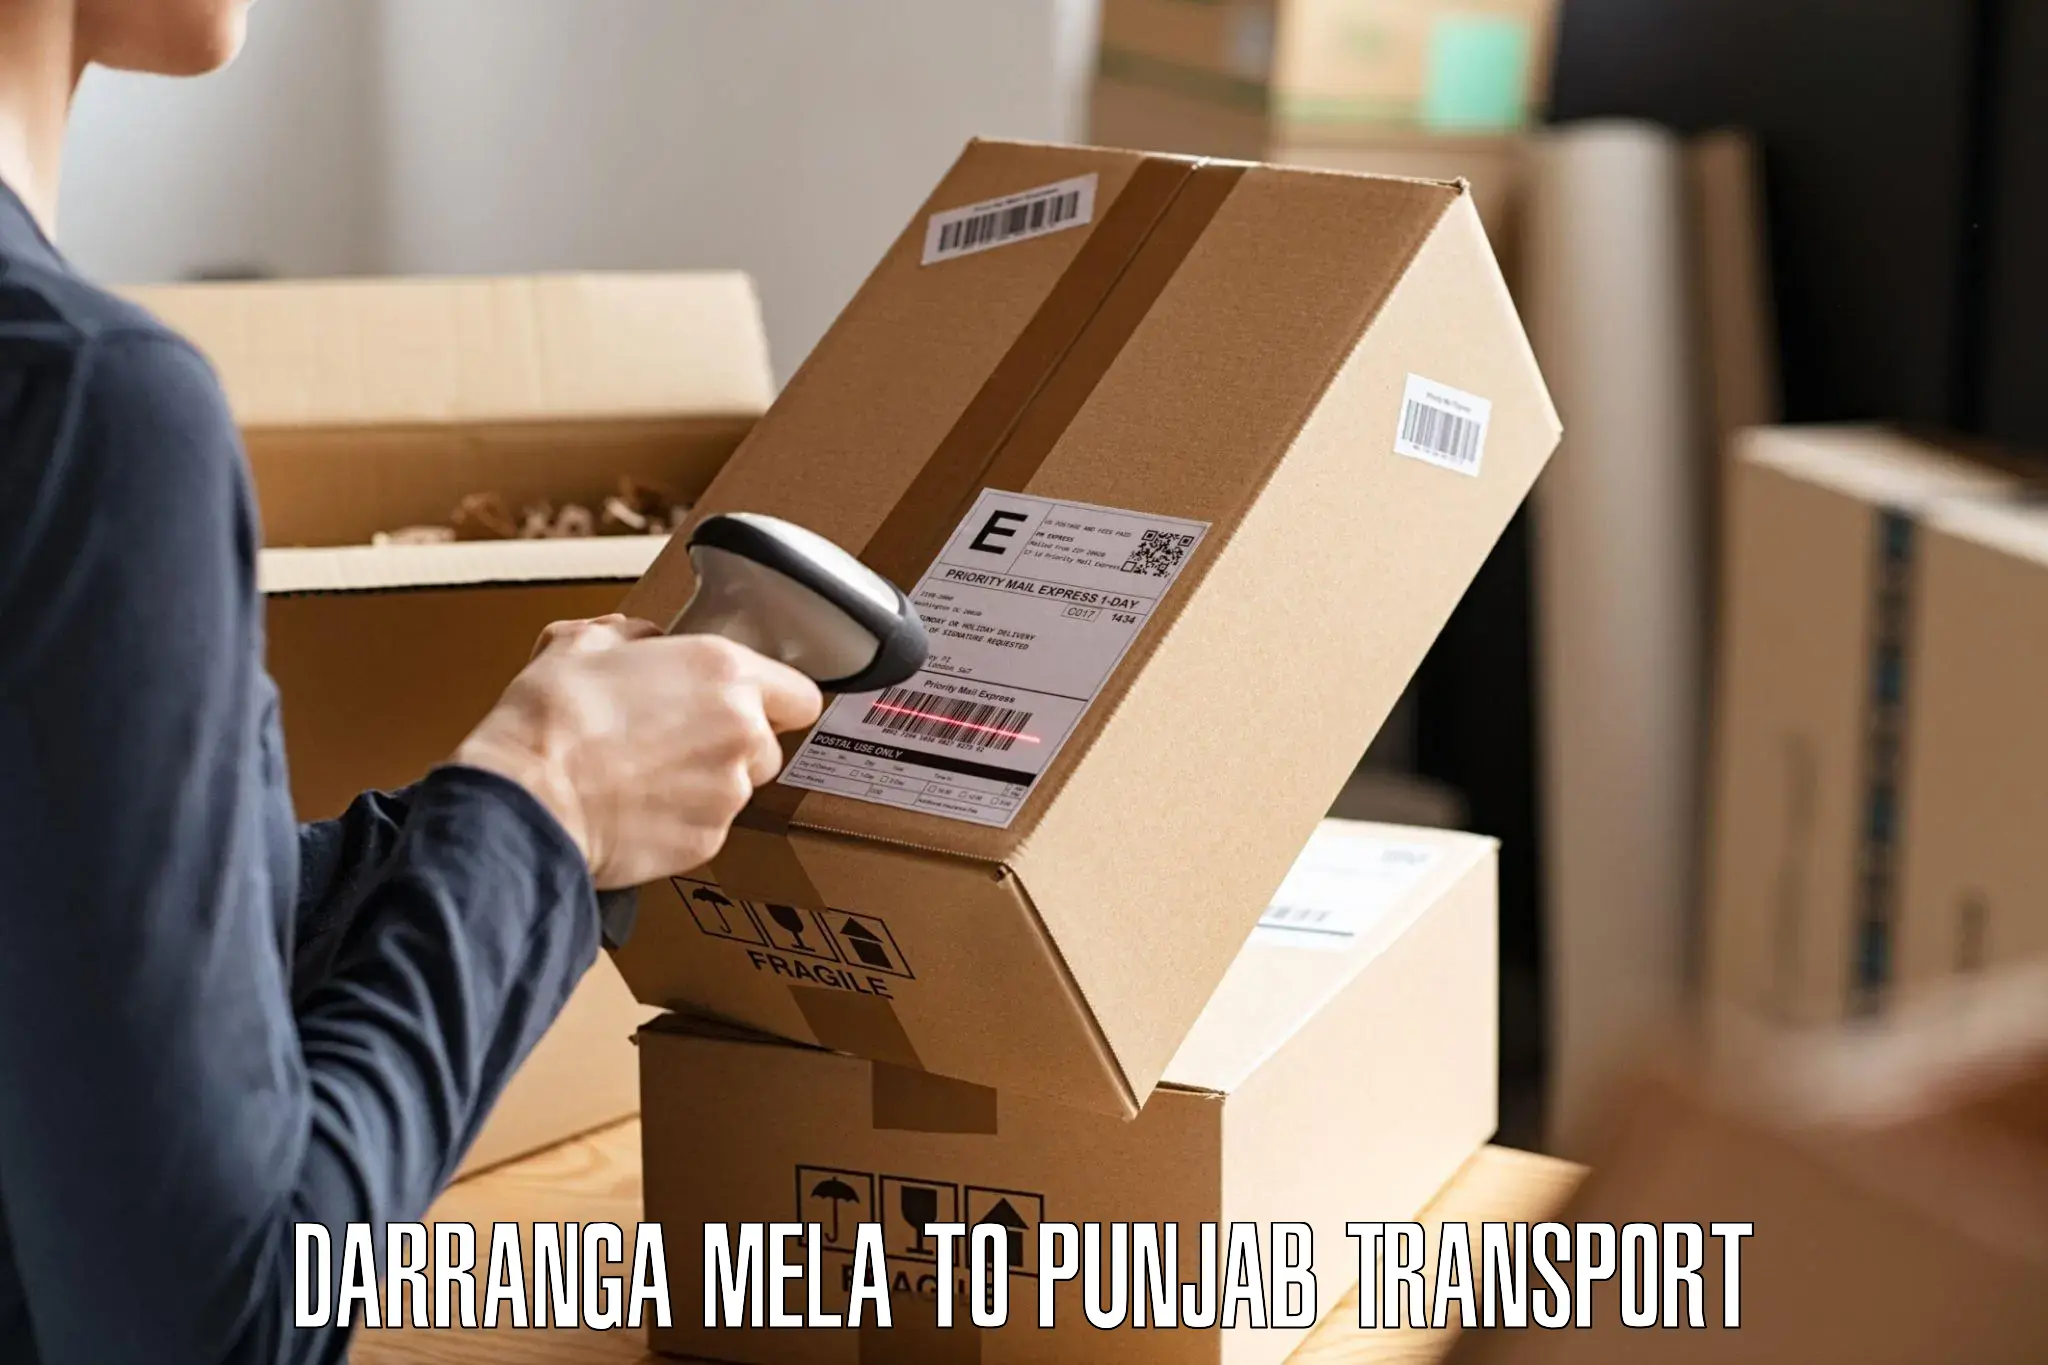 Nationwide transport services Darranga Mela to Zira